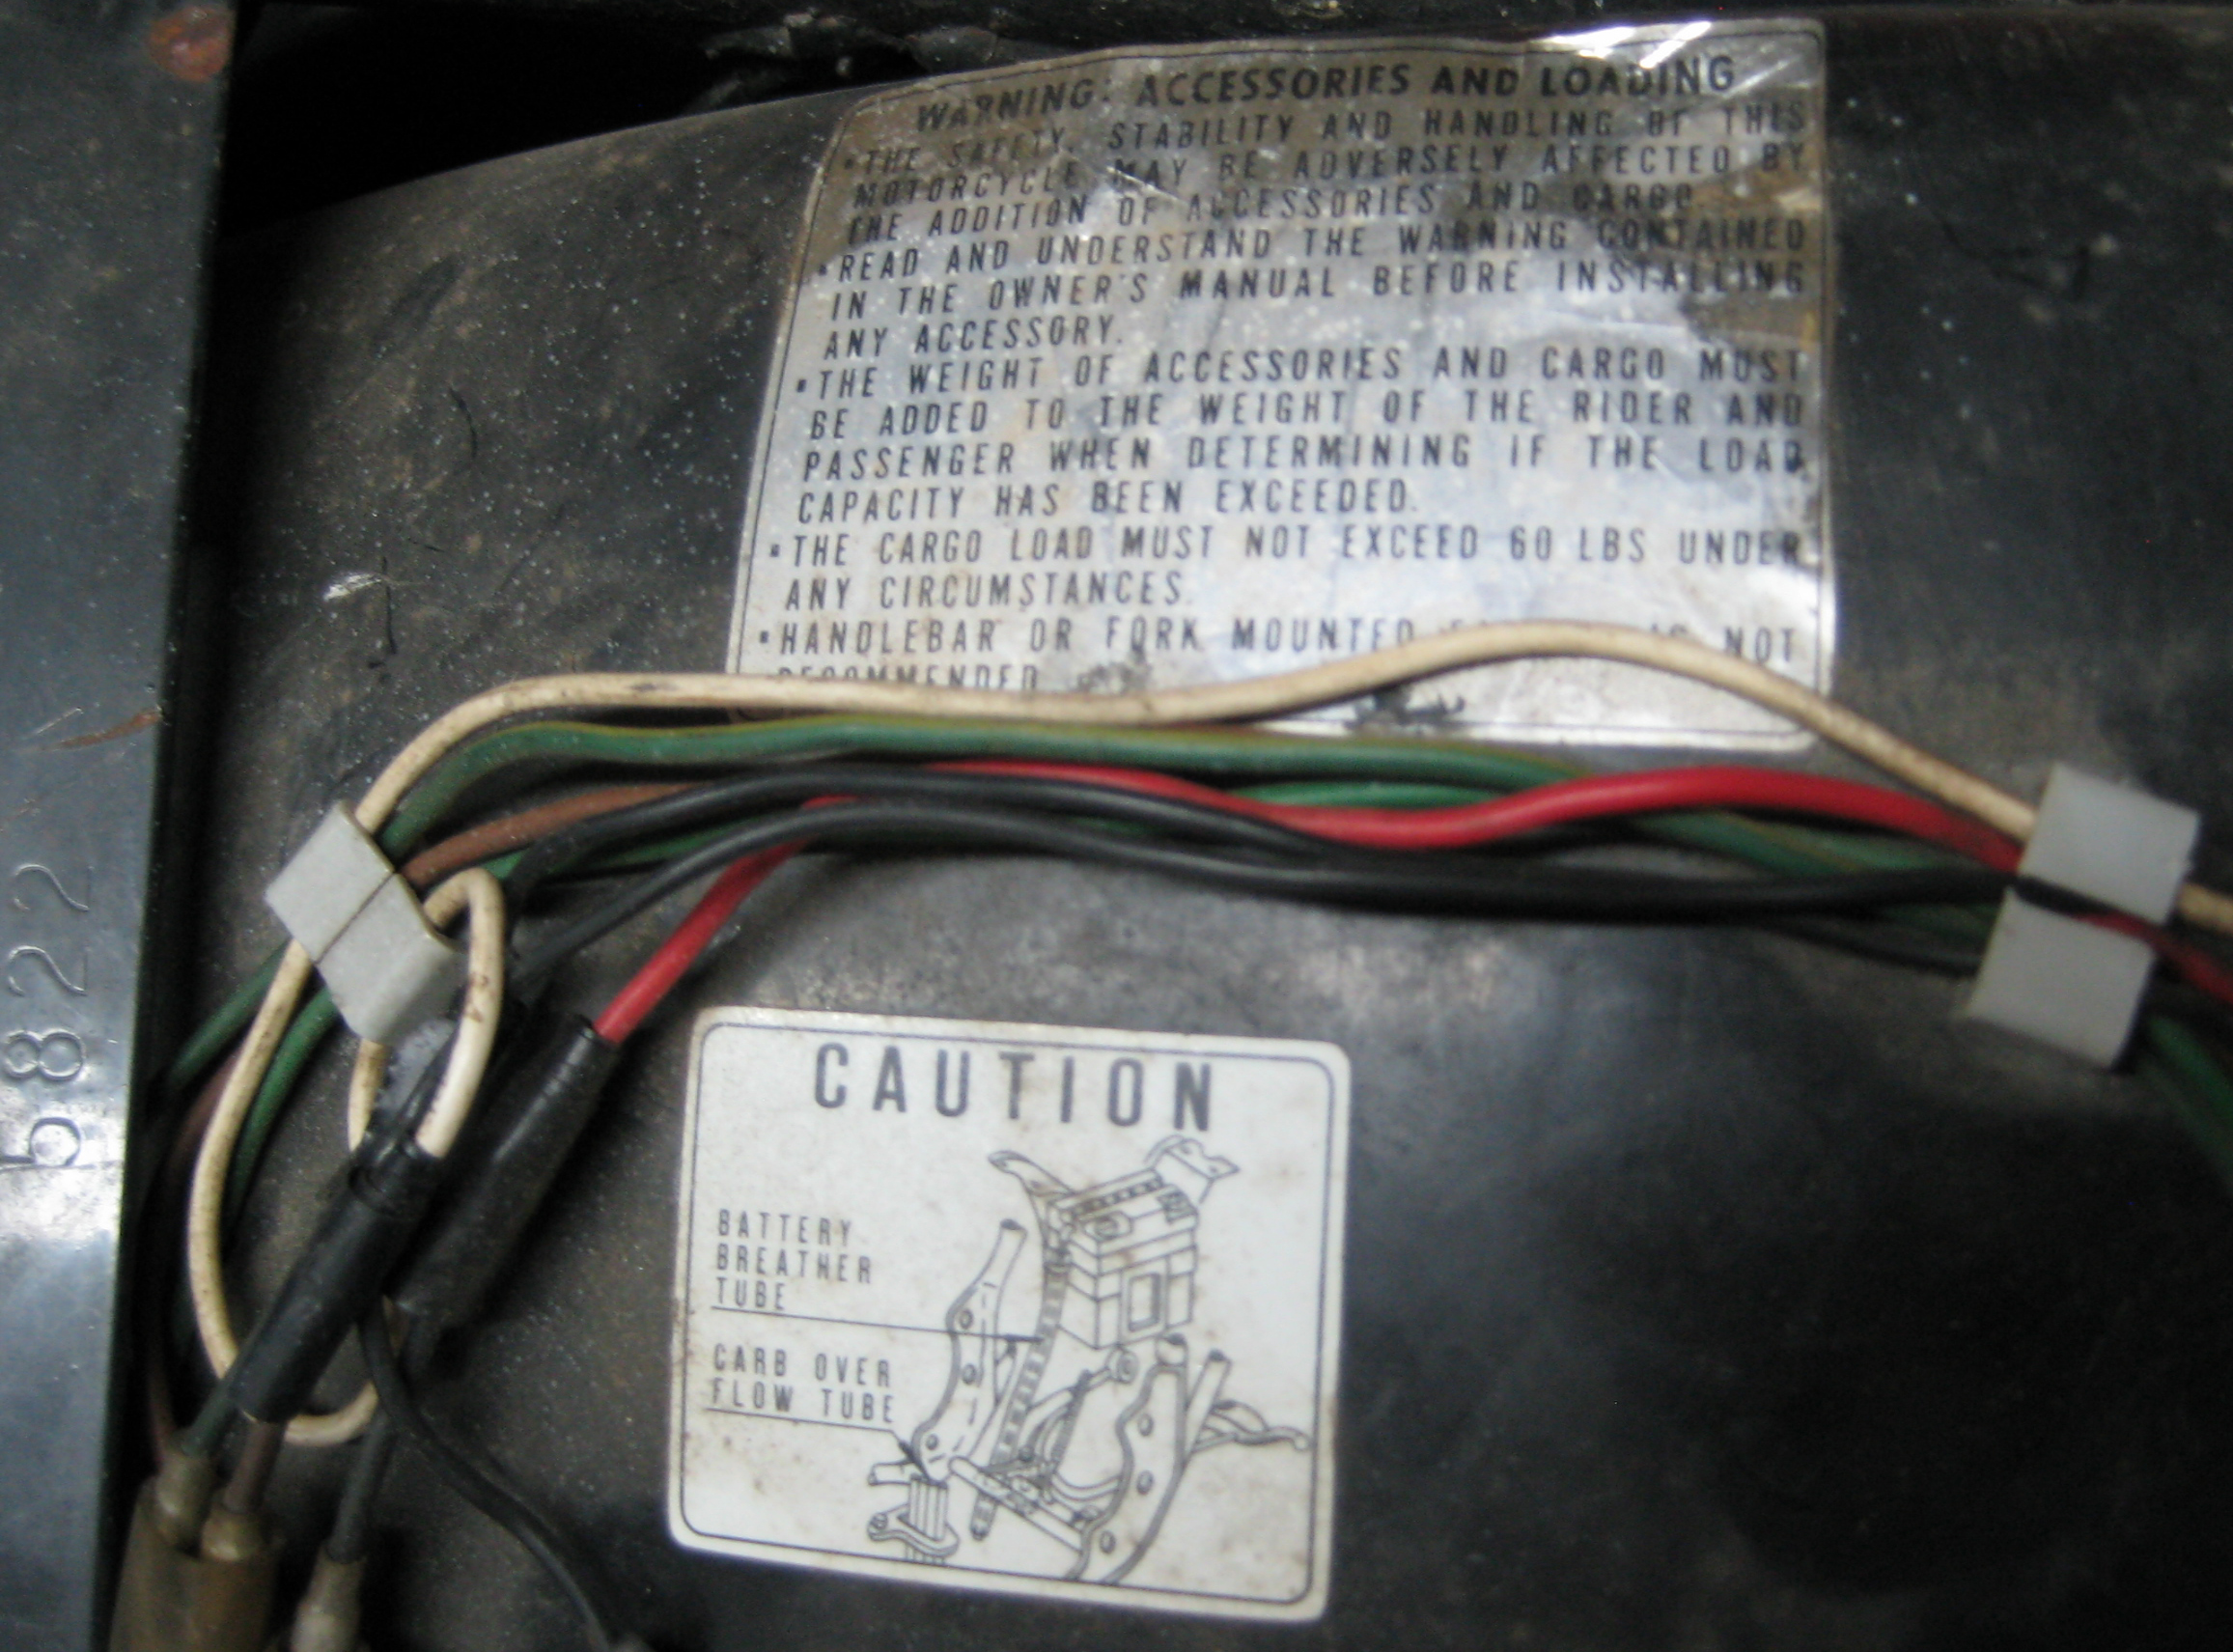 Honda 750 warning caution stickers 1976 inner rear fender